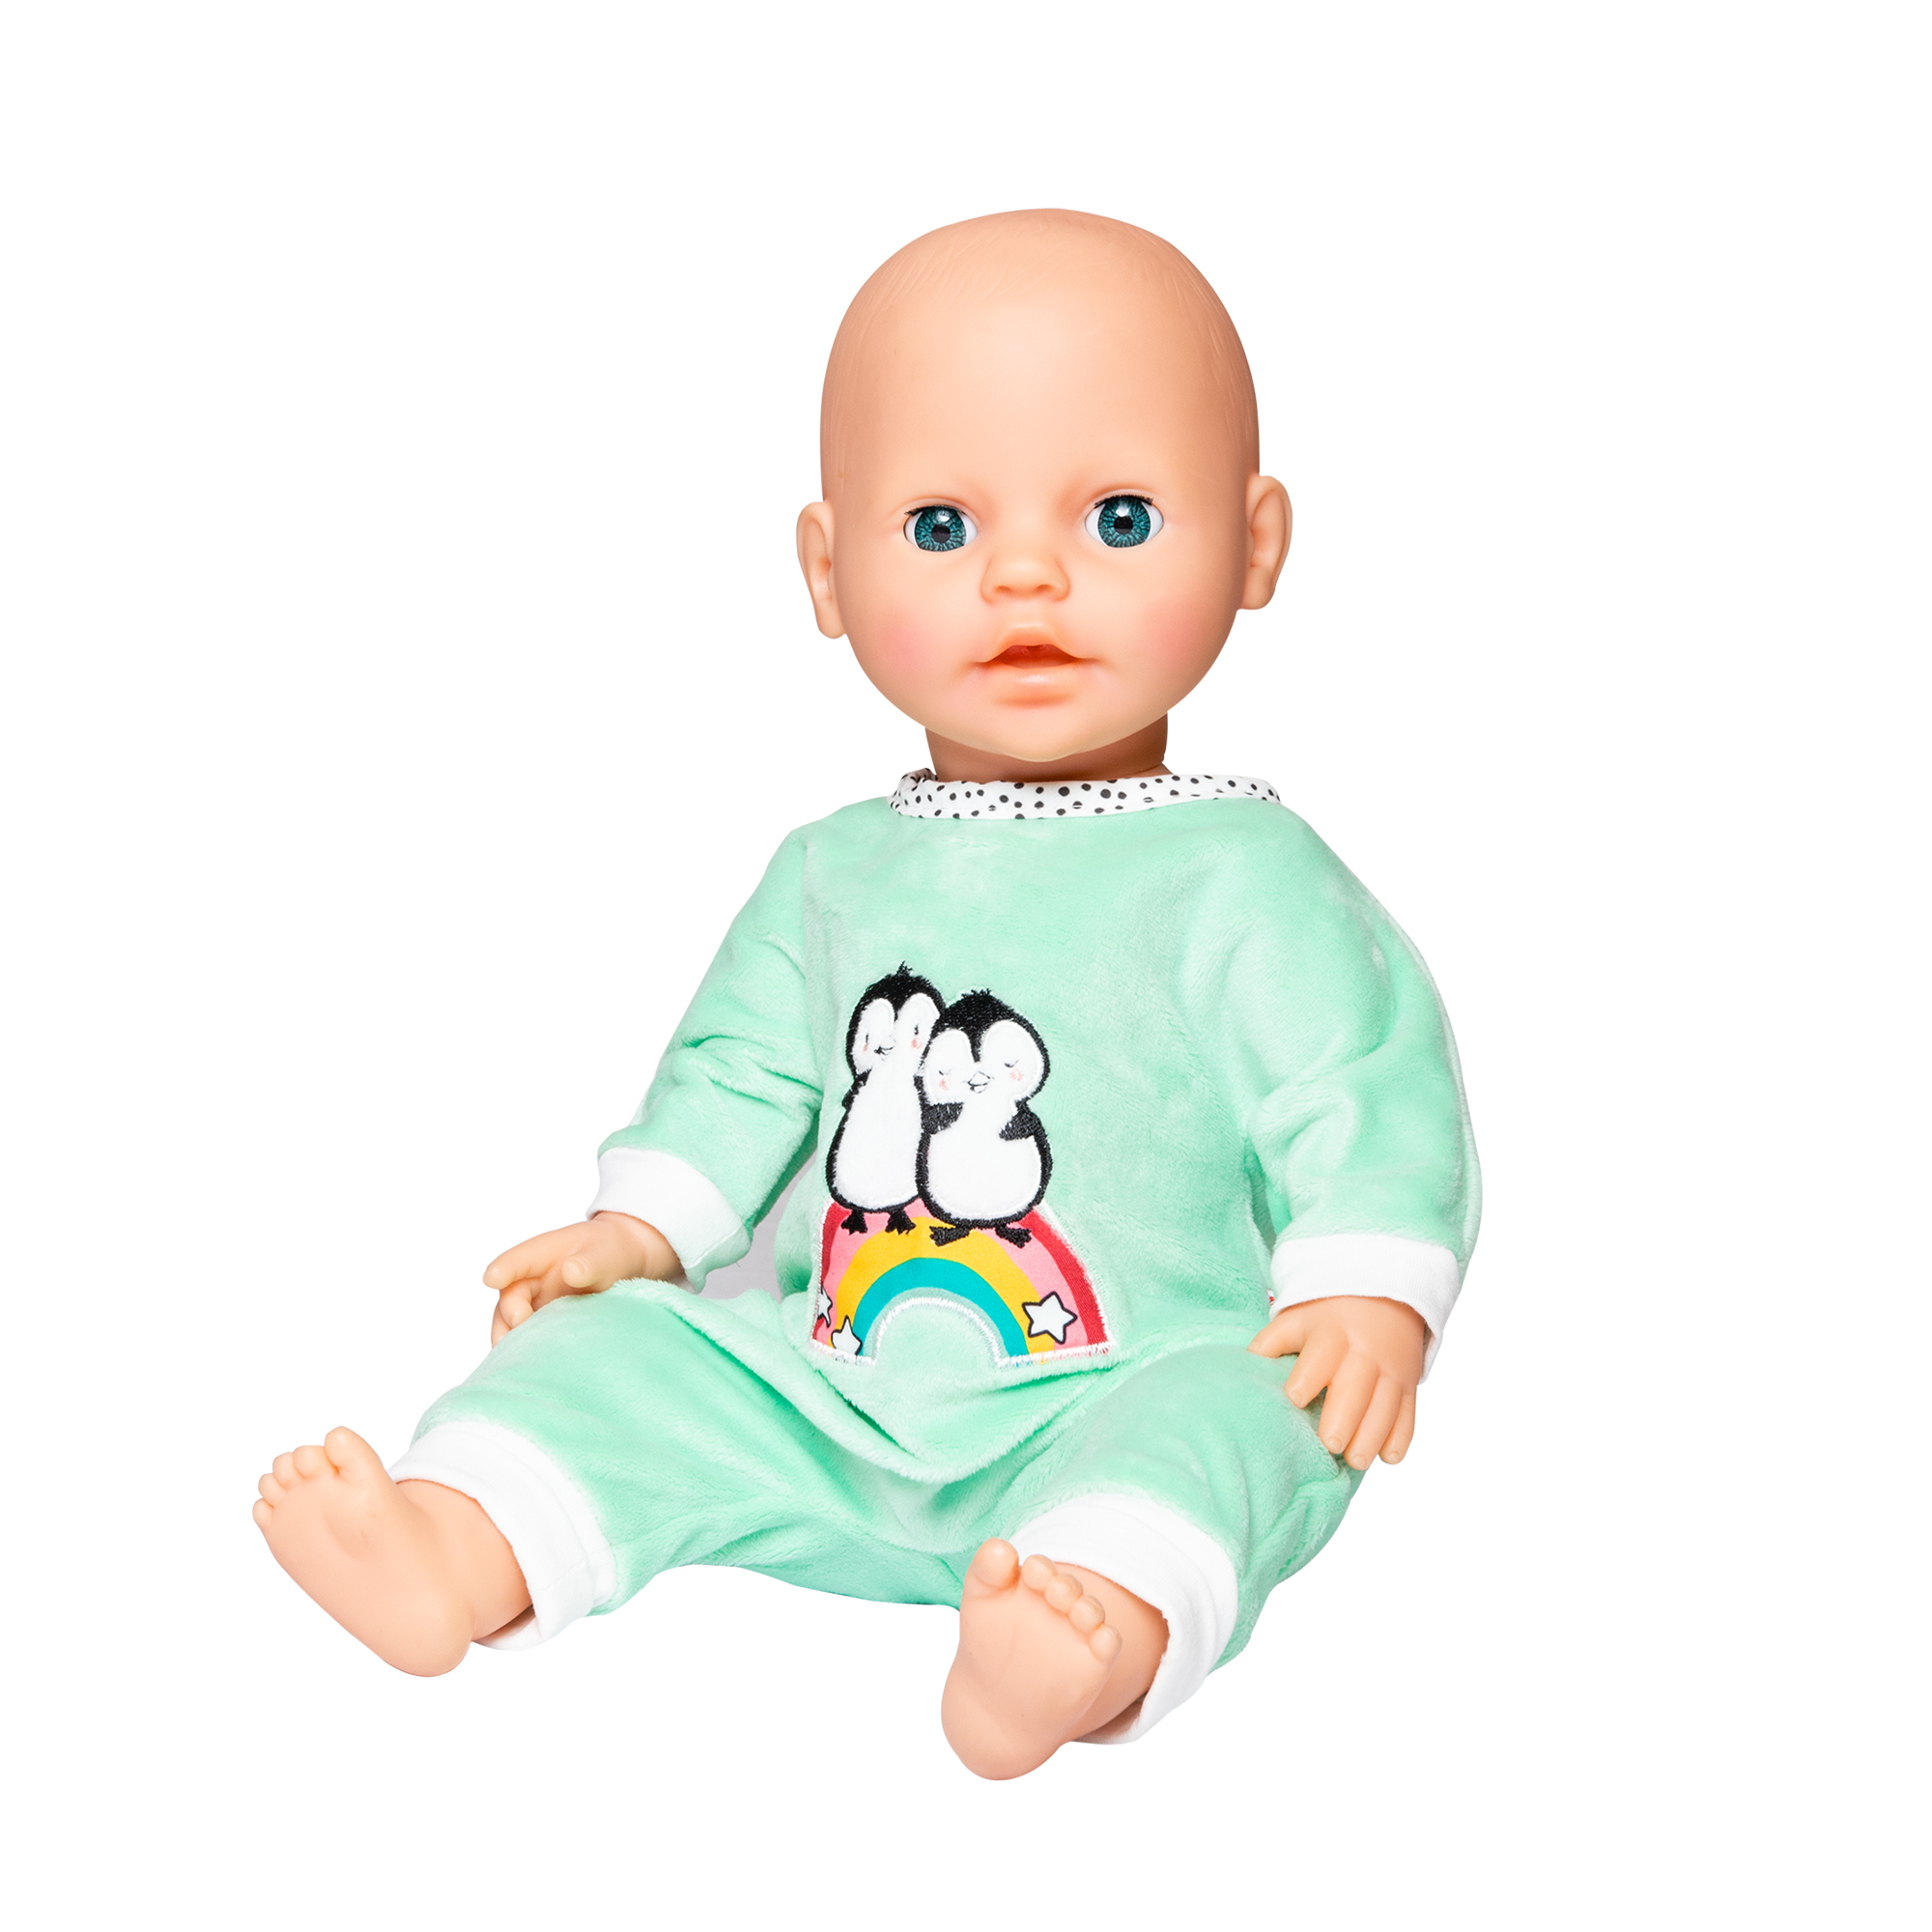 Größe 35-45 cm Bekleidungs-Set für Puppen im Pinguin Pünktchen Design 2 teilig mit Strampler und T-Shirt Heless 2185